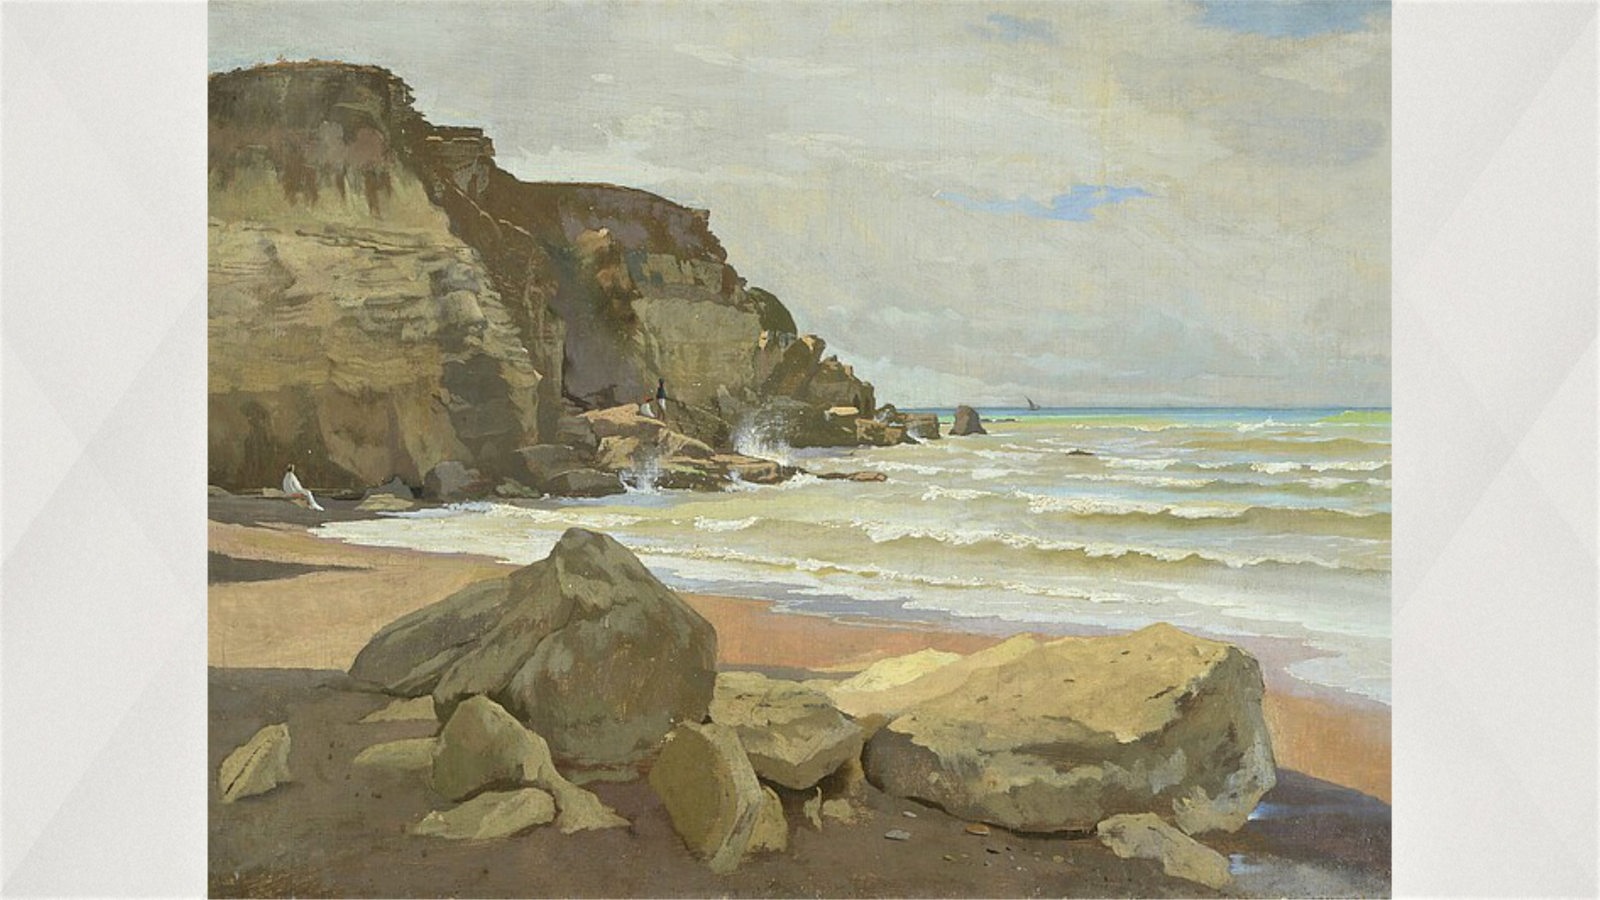 Gemälde: Anselm Feuerbach, Meeresküste, 1866